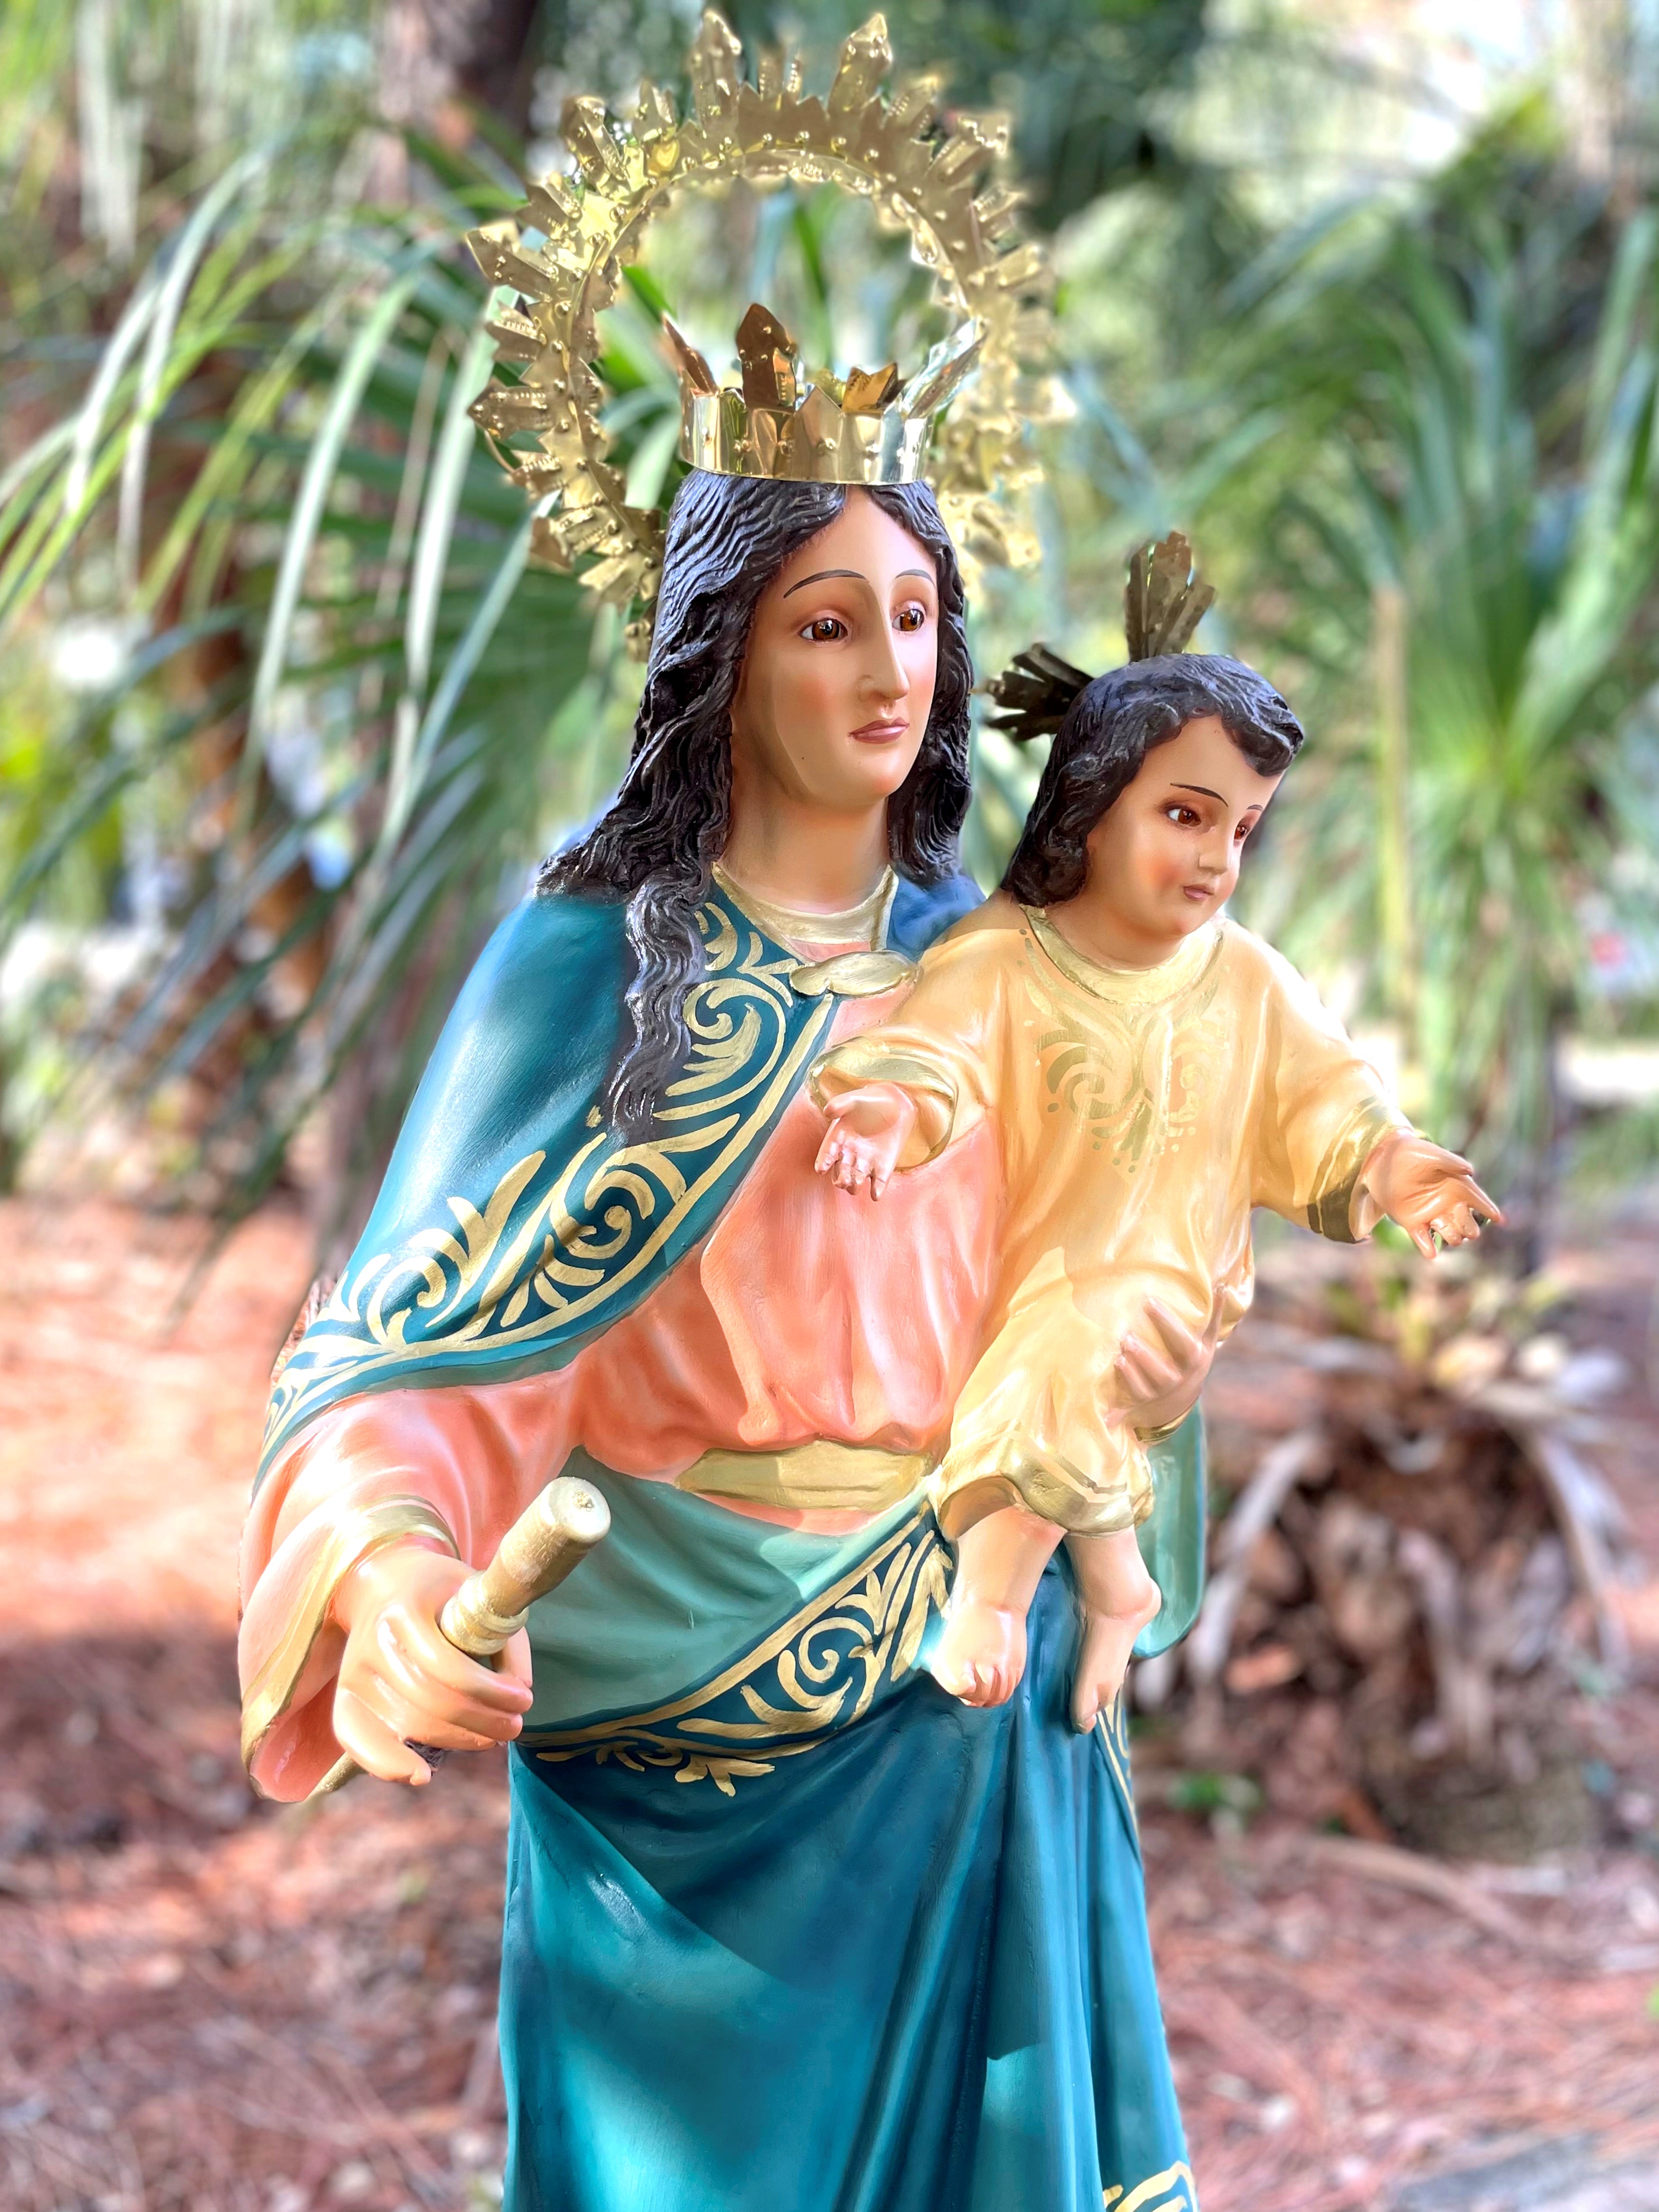 46" Mary Help of Christians Indoor and Outdoor Statue / Imagen de María Auxiliadora de 46" para Interiores y Exteriores